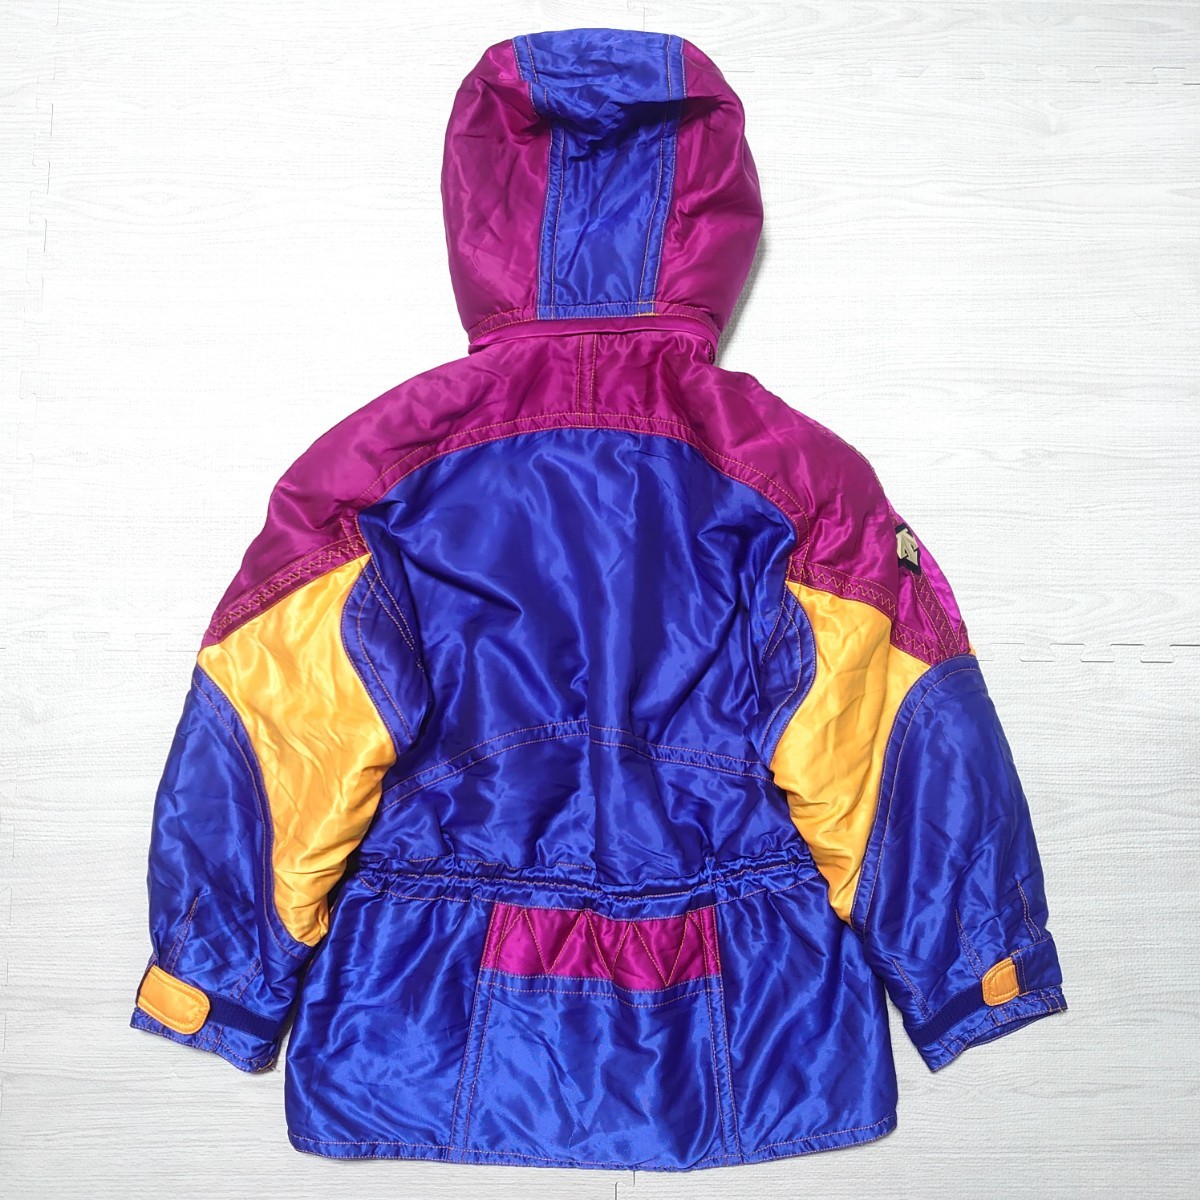 DESCENTE Descente men's ski wear setup jacket pants k Lazy purple embroidery retro that time thing Vintage tp-23x1125